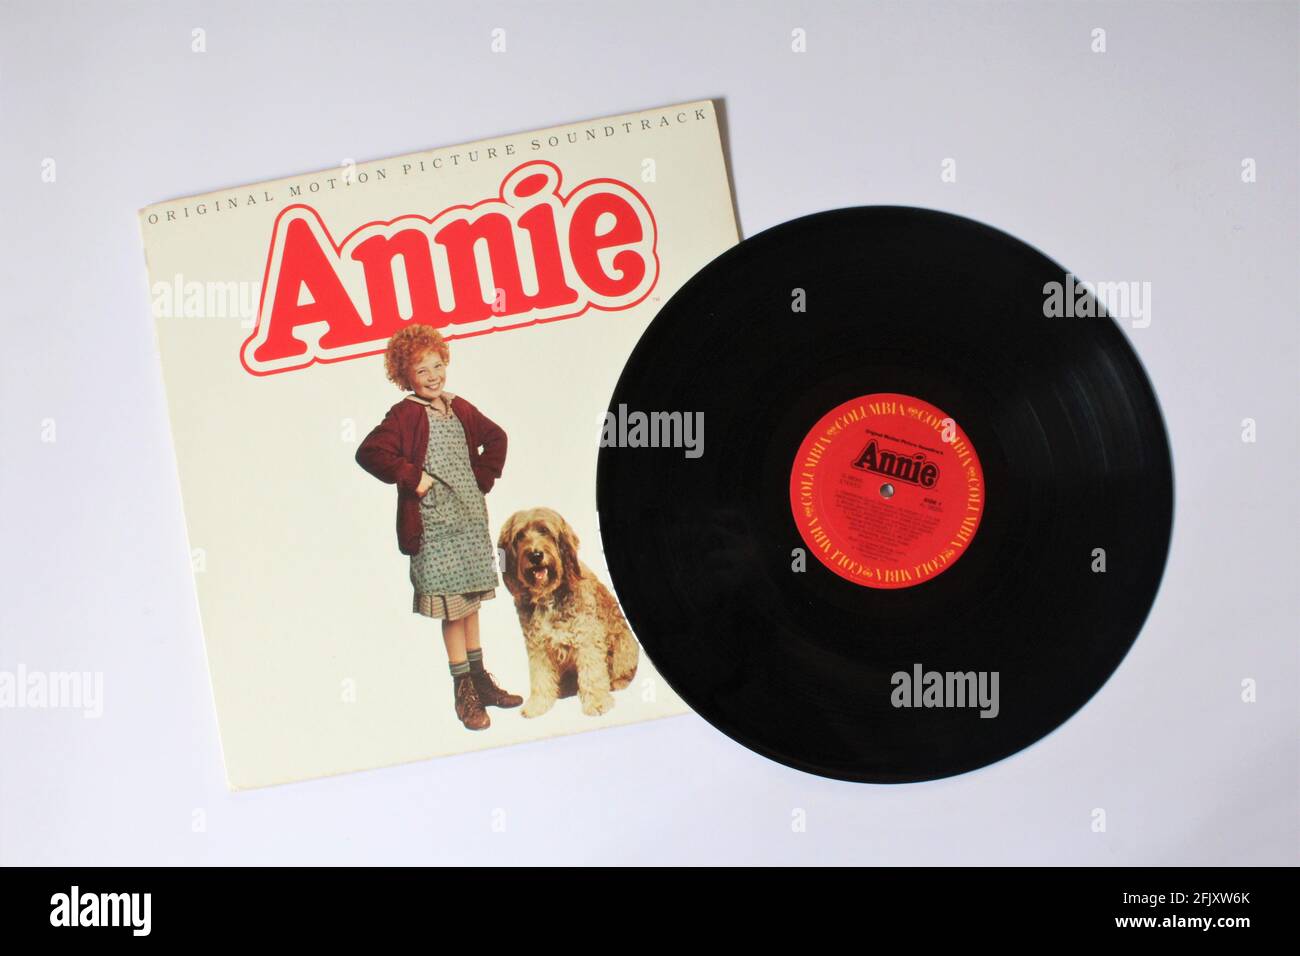 Annie Original Motion Picture Soundtrack-Musikalbum auf Vinyl-Schallplatte. Klassischer Film. Stockfoto